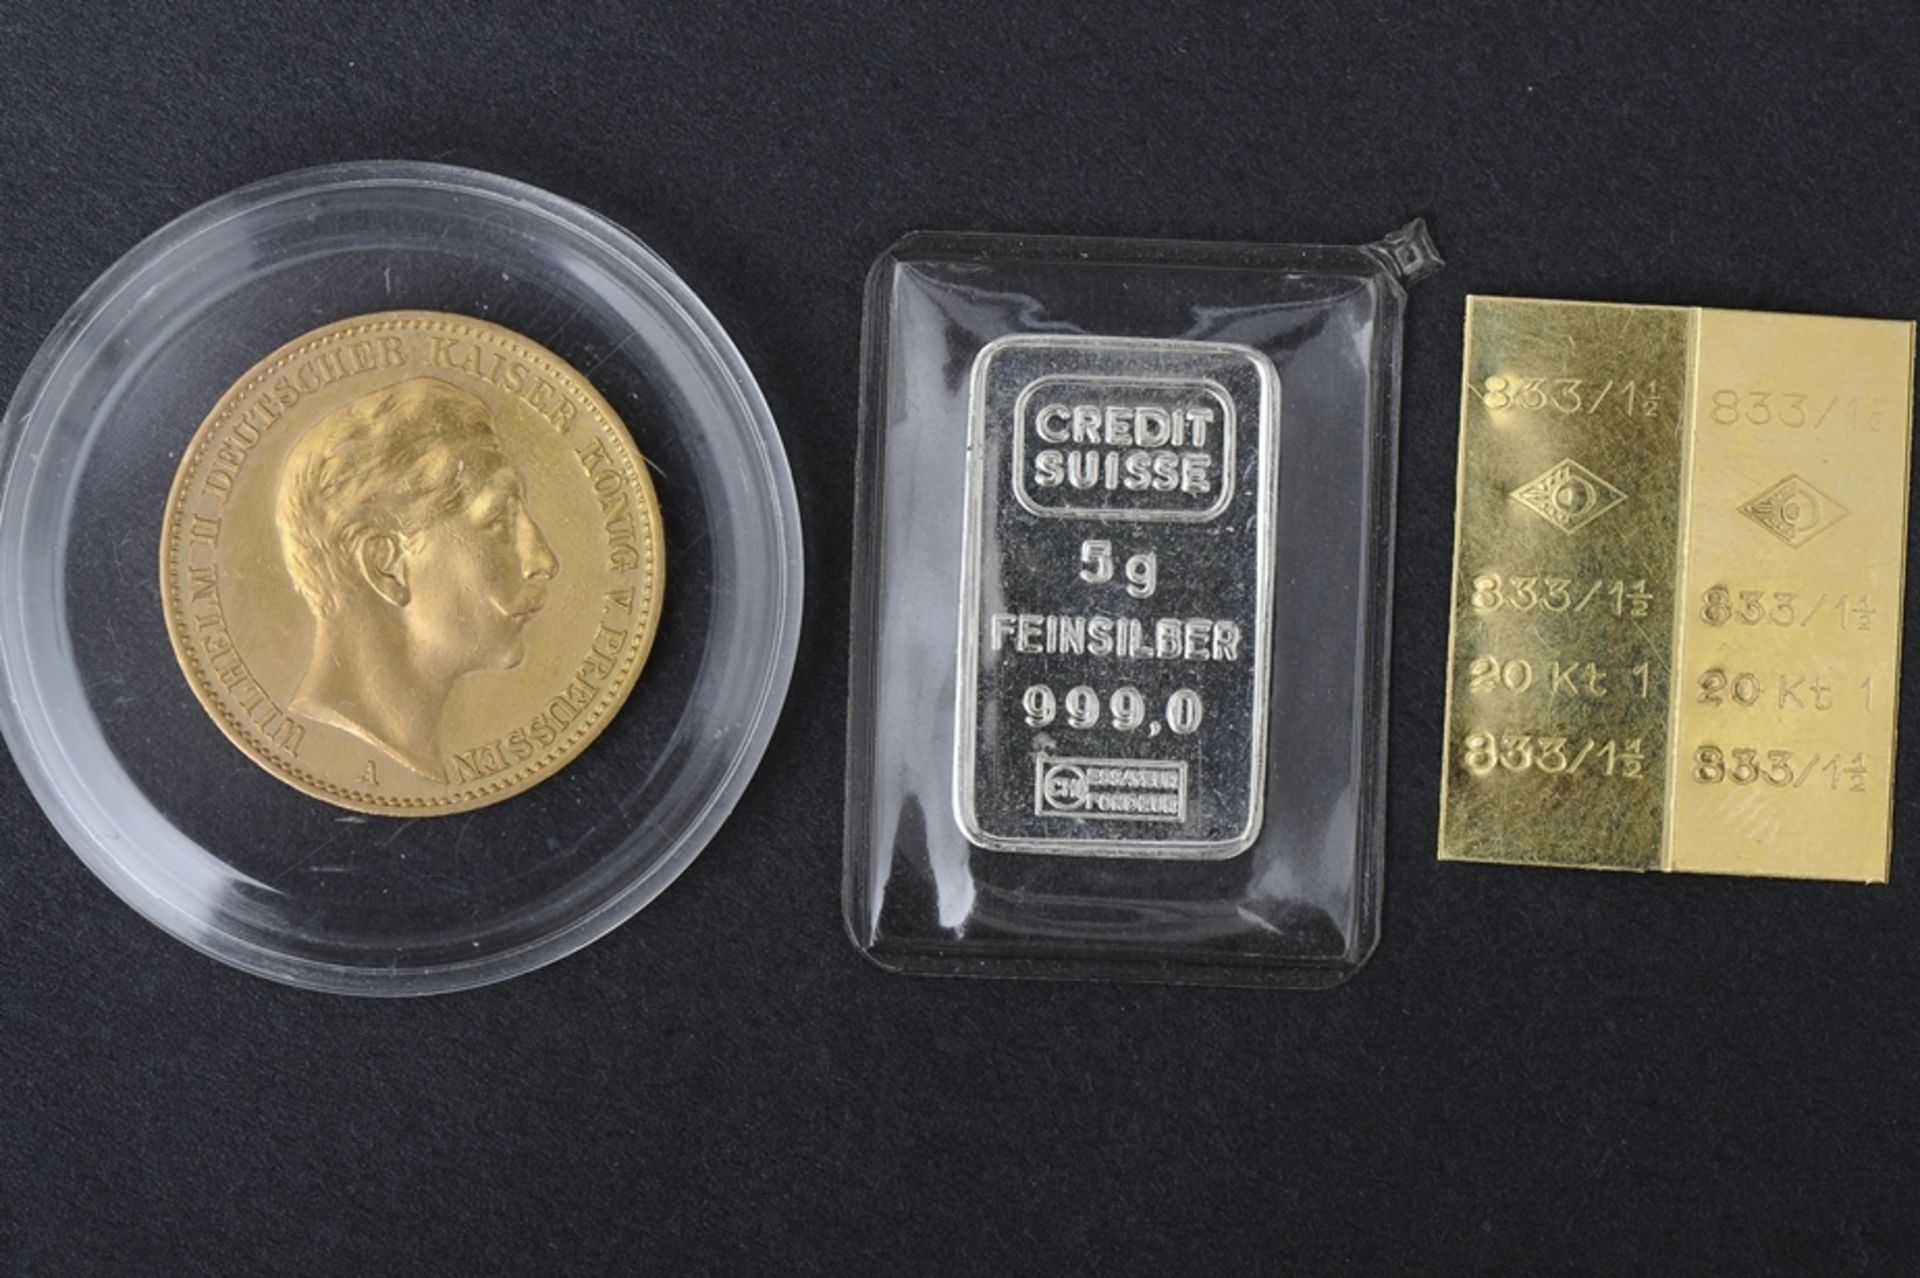 20 Goldmark - Preussen - 1911 - Buchstabe "A", kleine Feinsilberbarren - 5gr. - Credit Suisse sowie